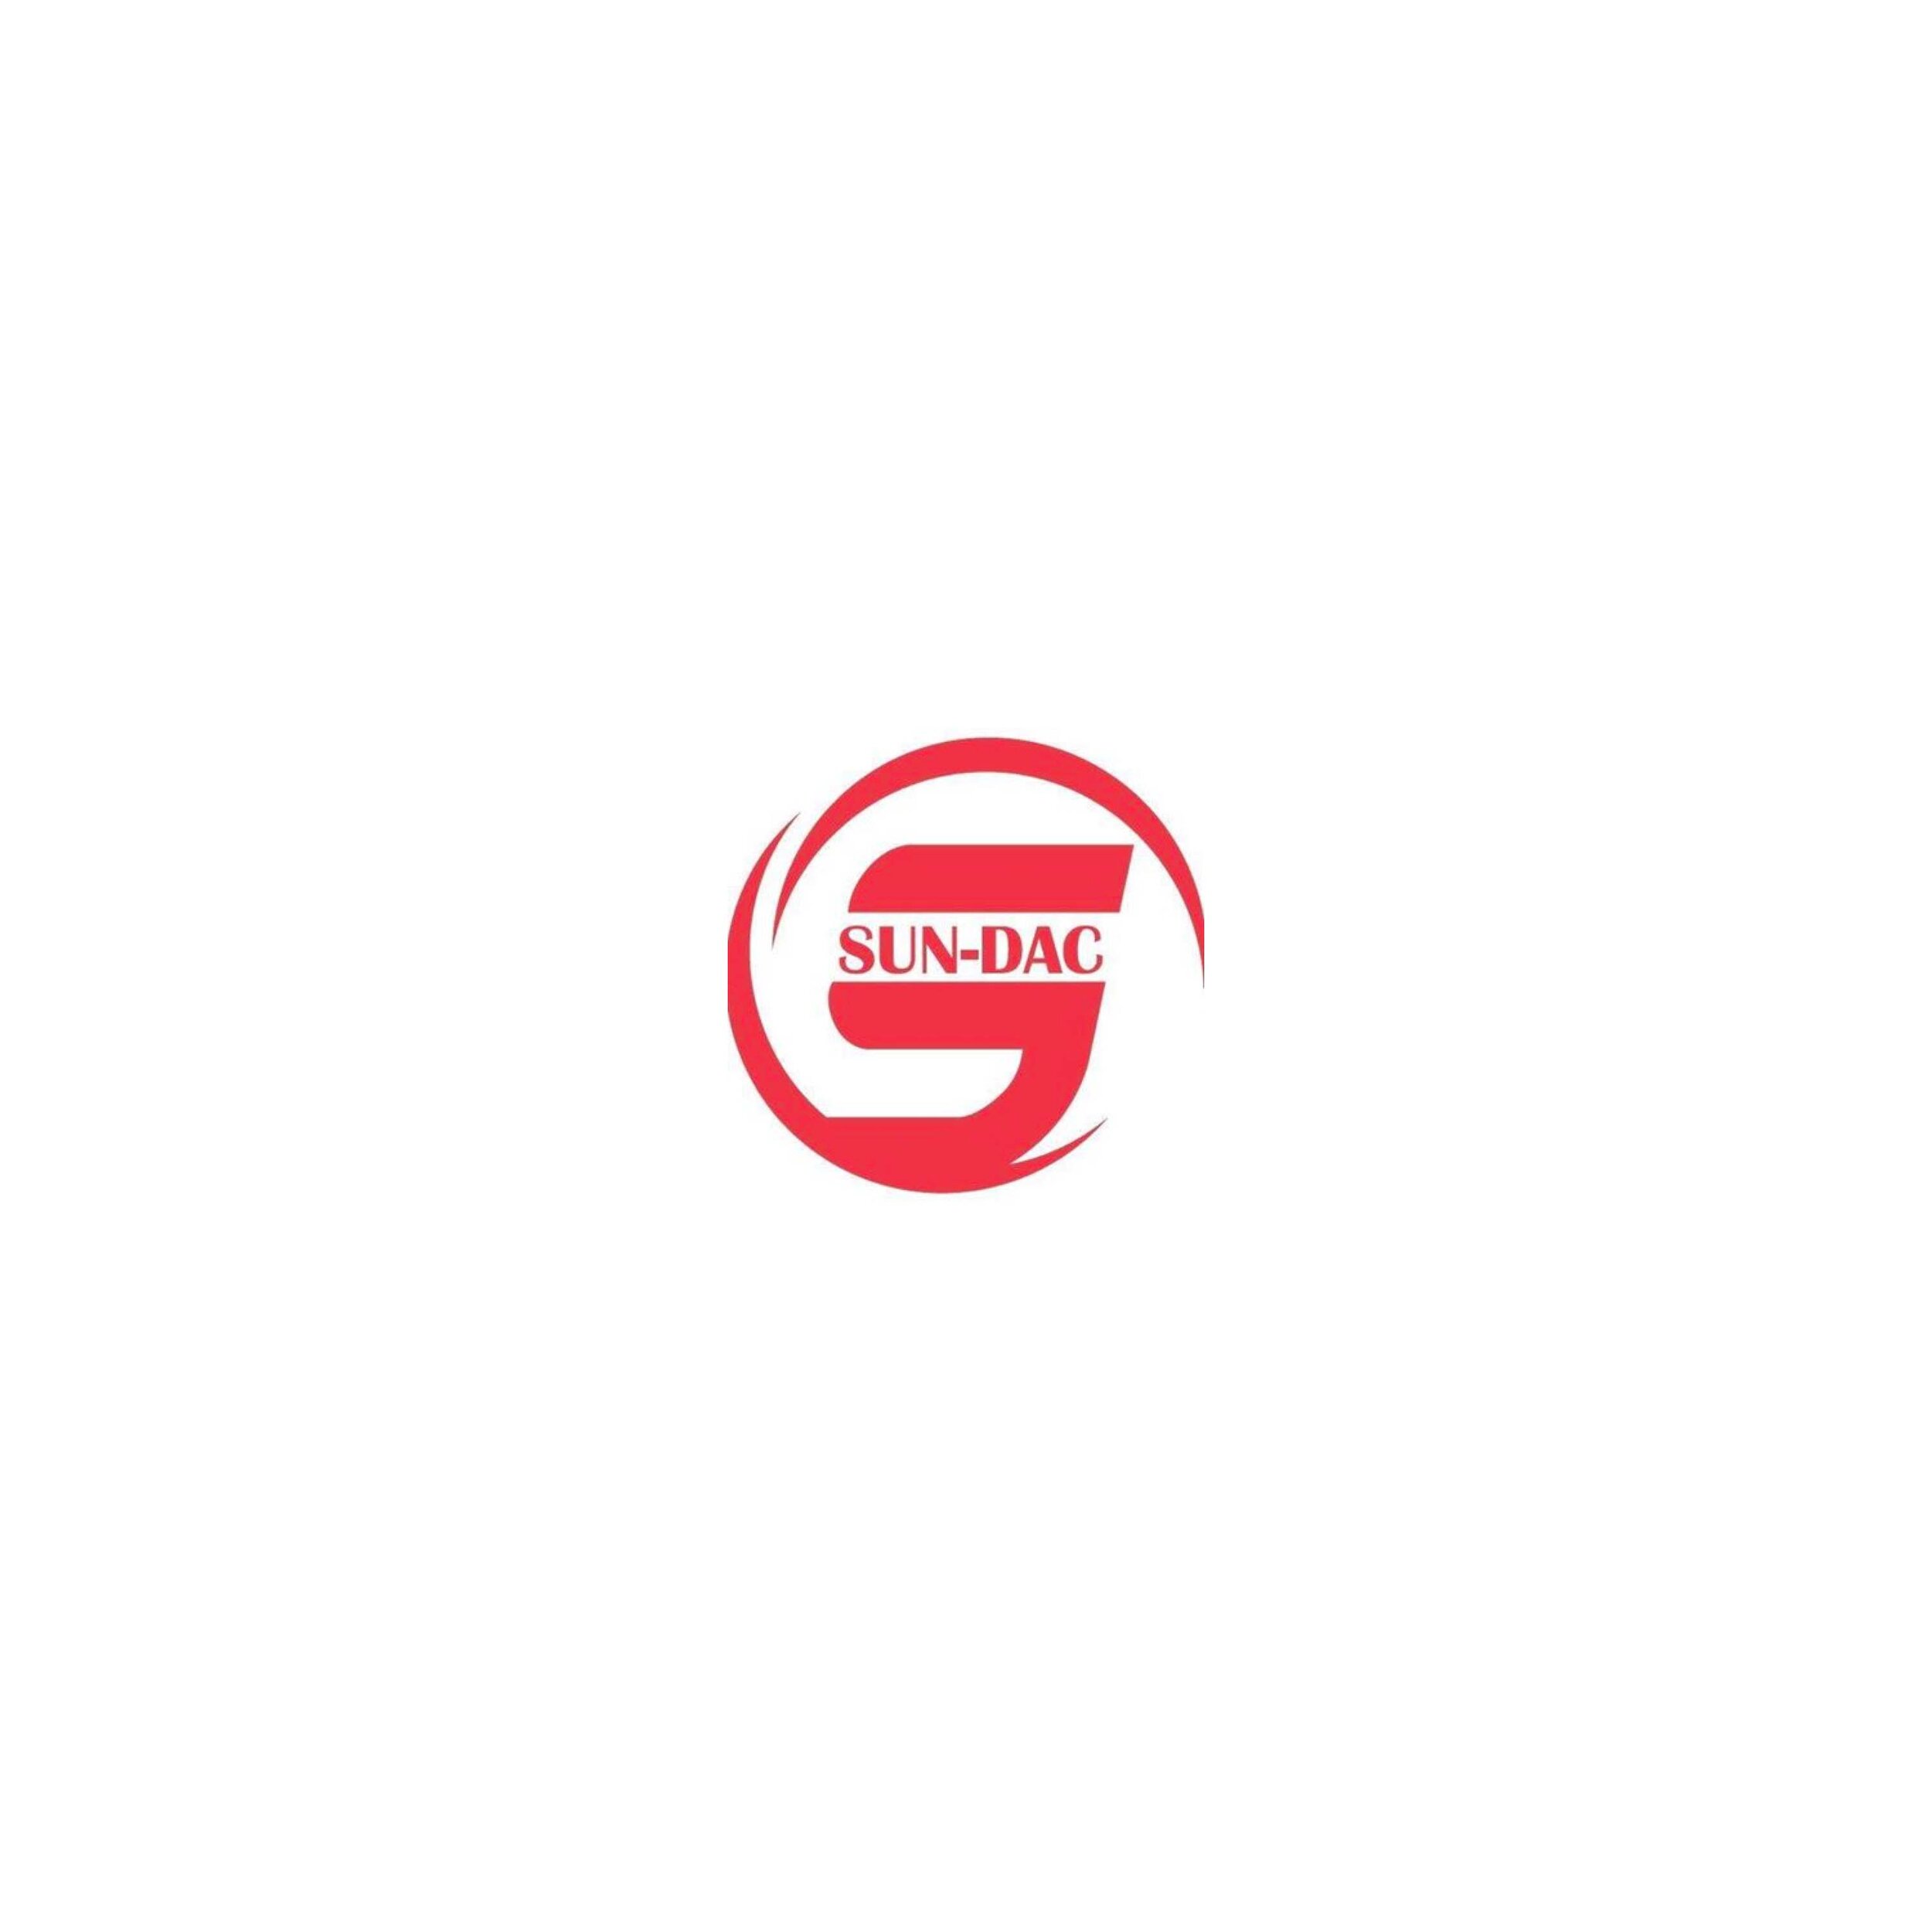 sundac logo.jpg